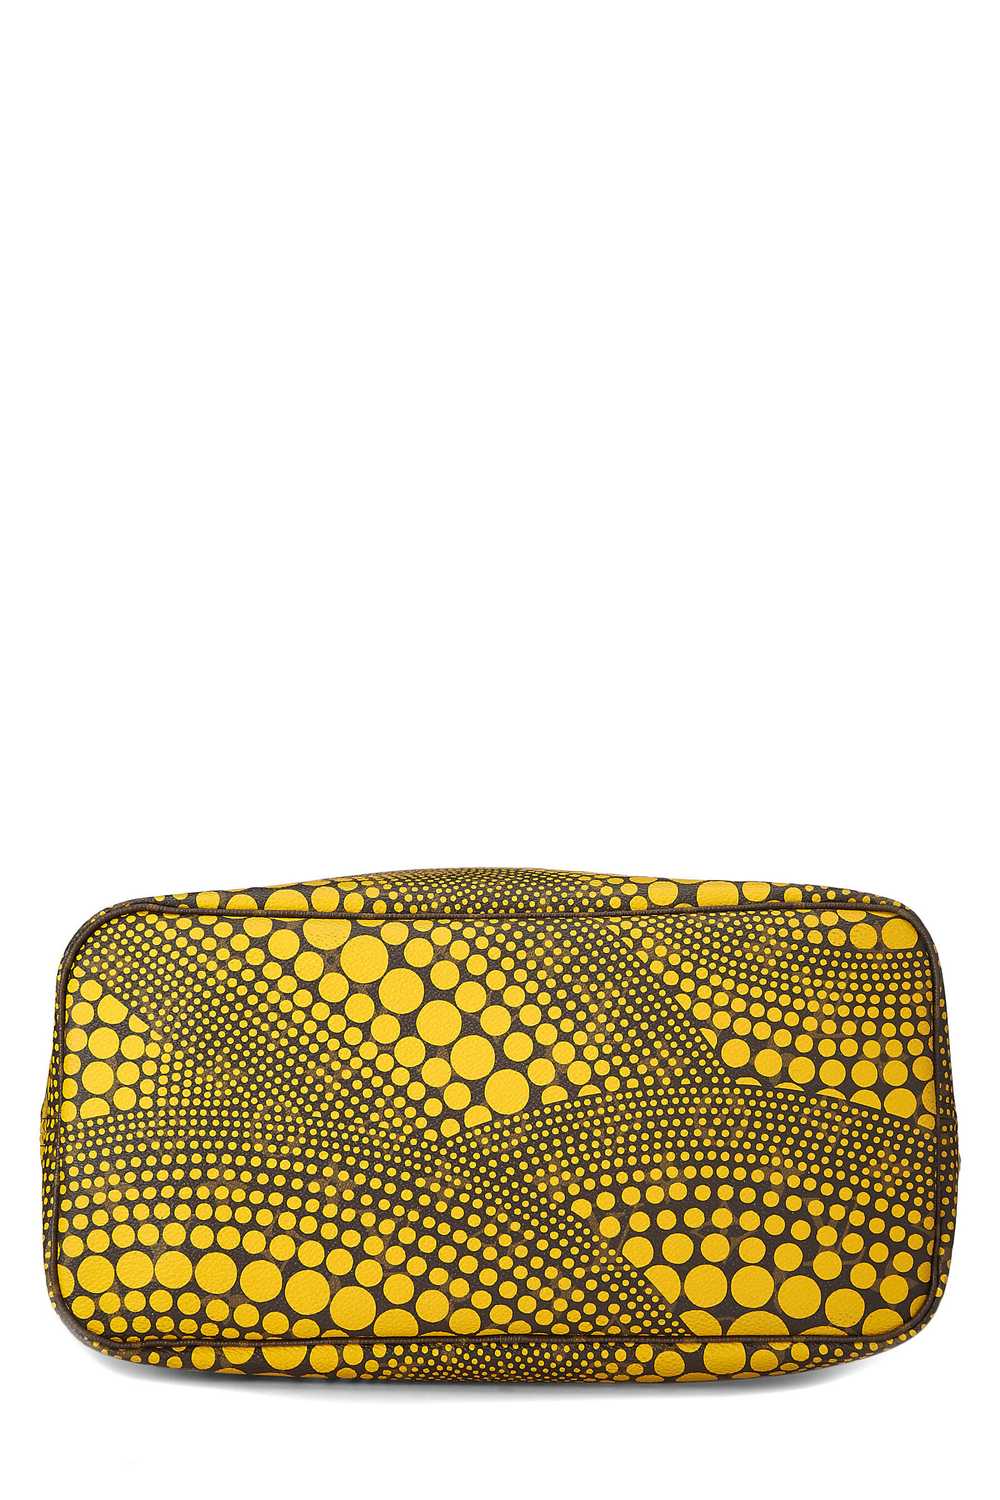 Yayoi Kusama x Louis Vuitton Yellow Monogram Dots… - image 5